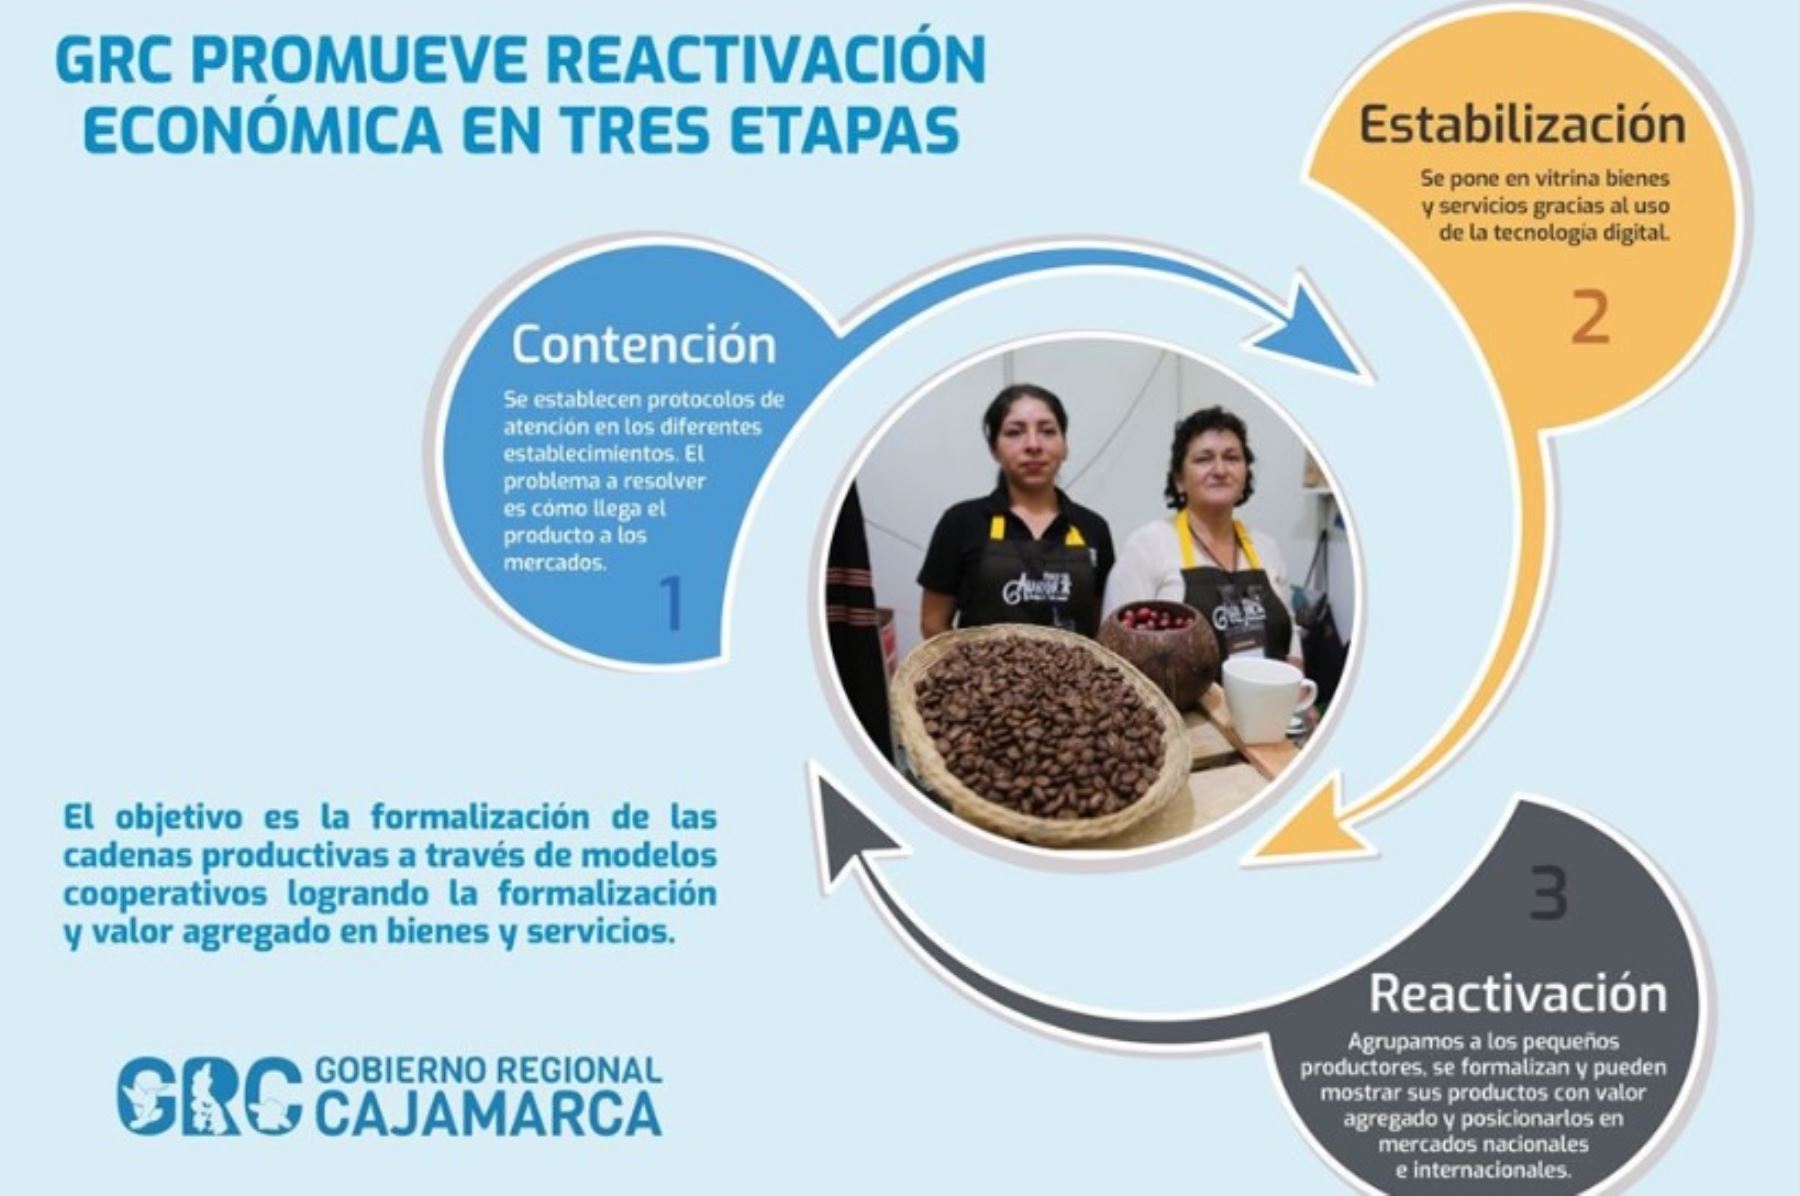 El Gobierno Regional de Cajamarca tiene listo su Plan de Contención, Estabilización y Reactivación Económica frente al impacto del Covid-19, que comprende un conjunto de medidas implementadas paulatinamente durante este año y hasta el 2021.